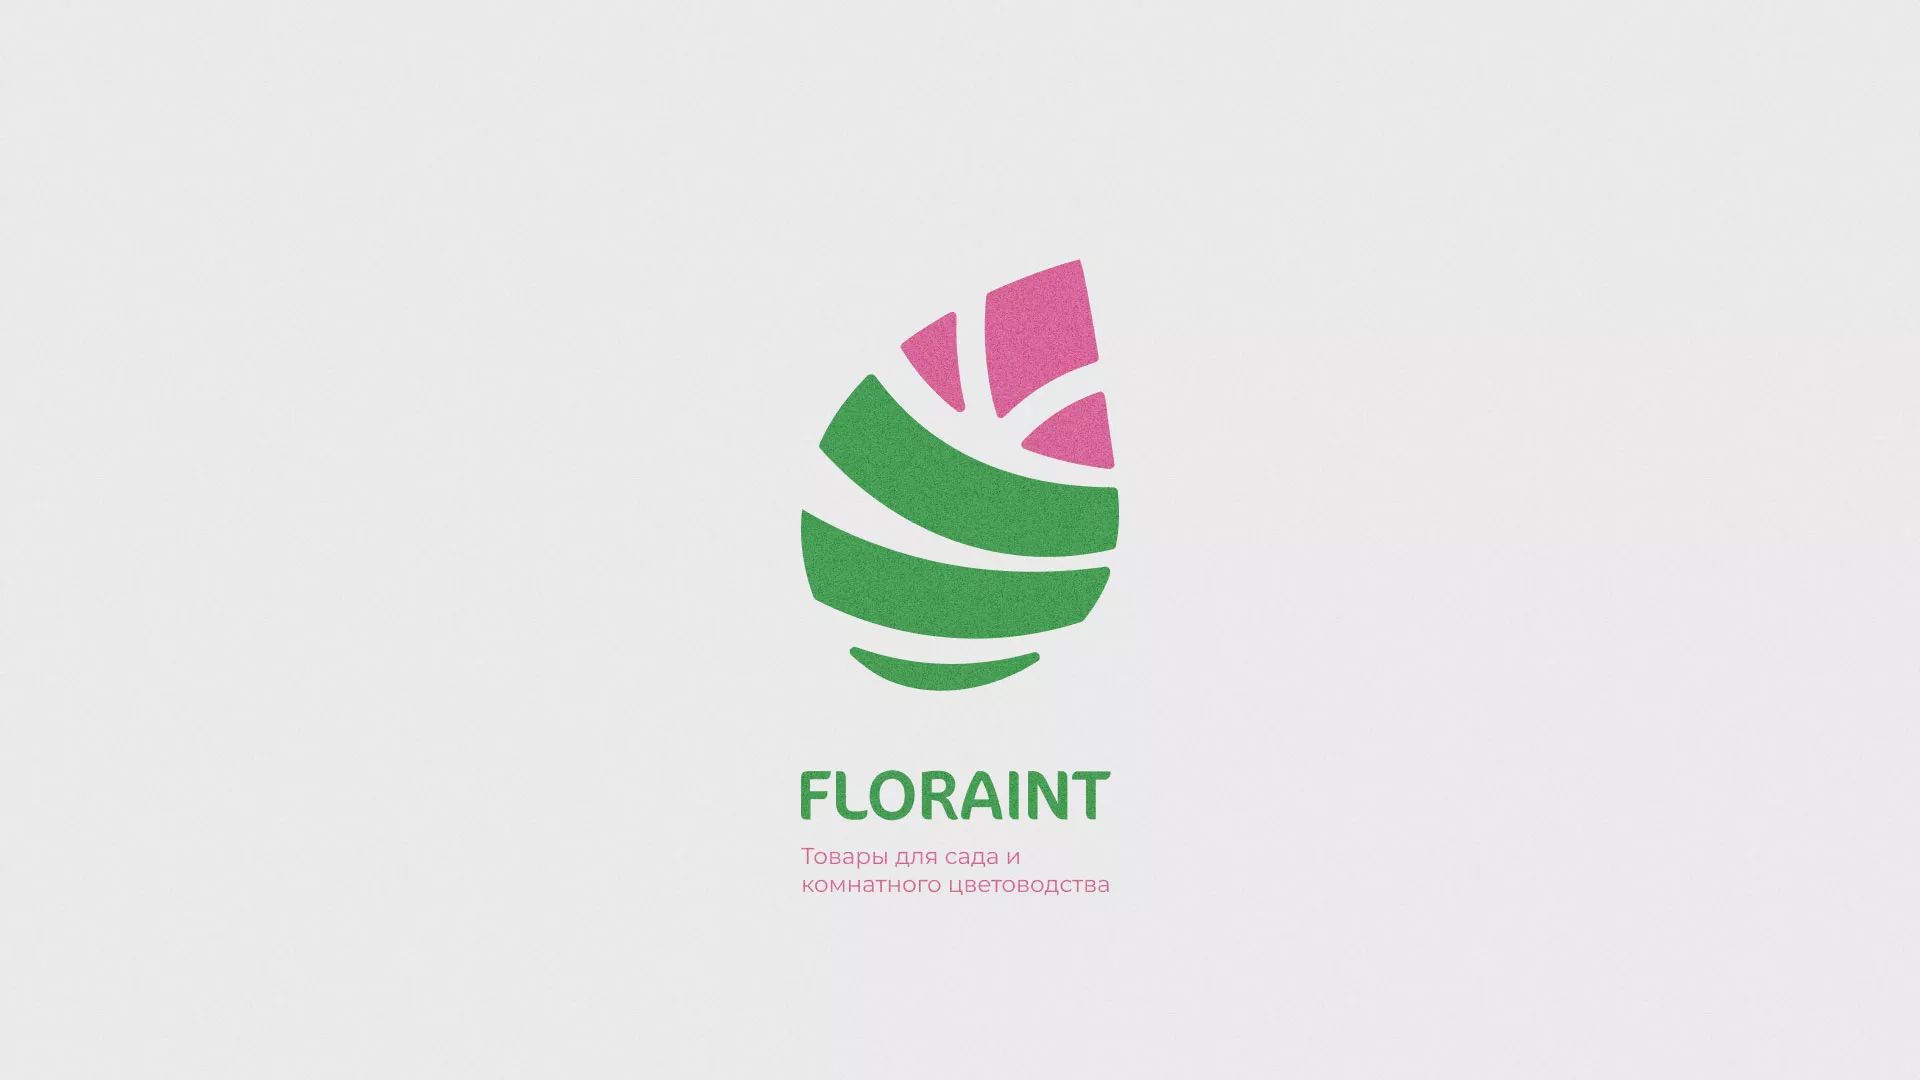 Разработка оформления профиля Instagram для магазина «Floraint» в Бикине